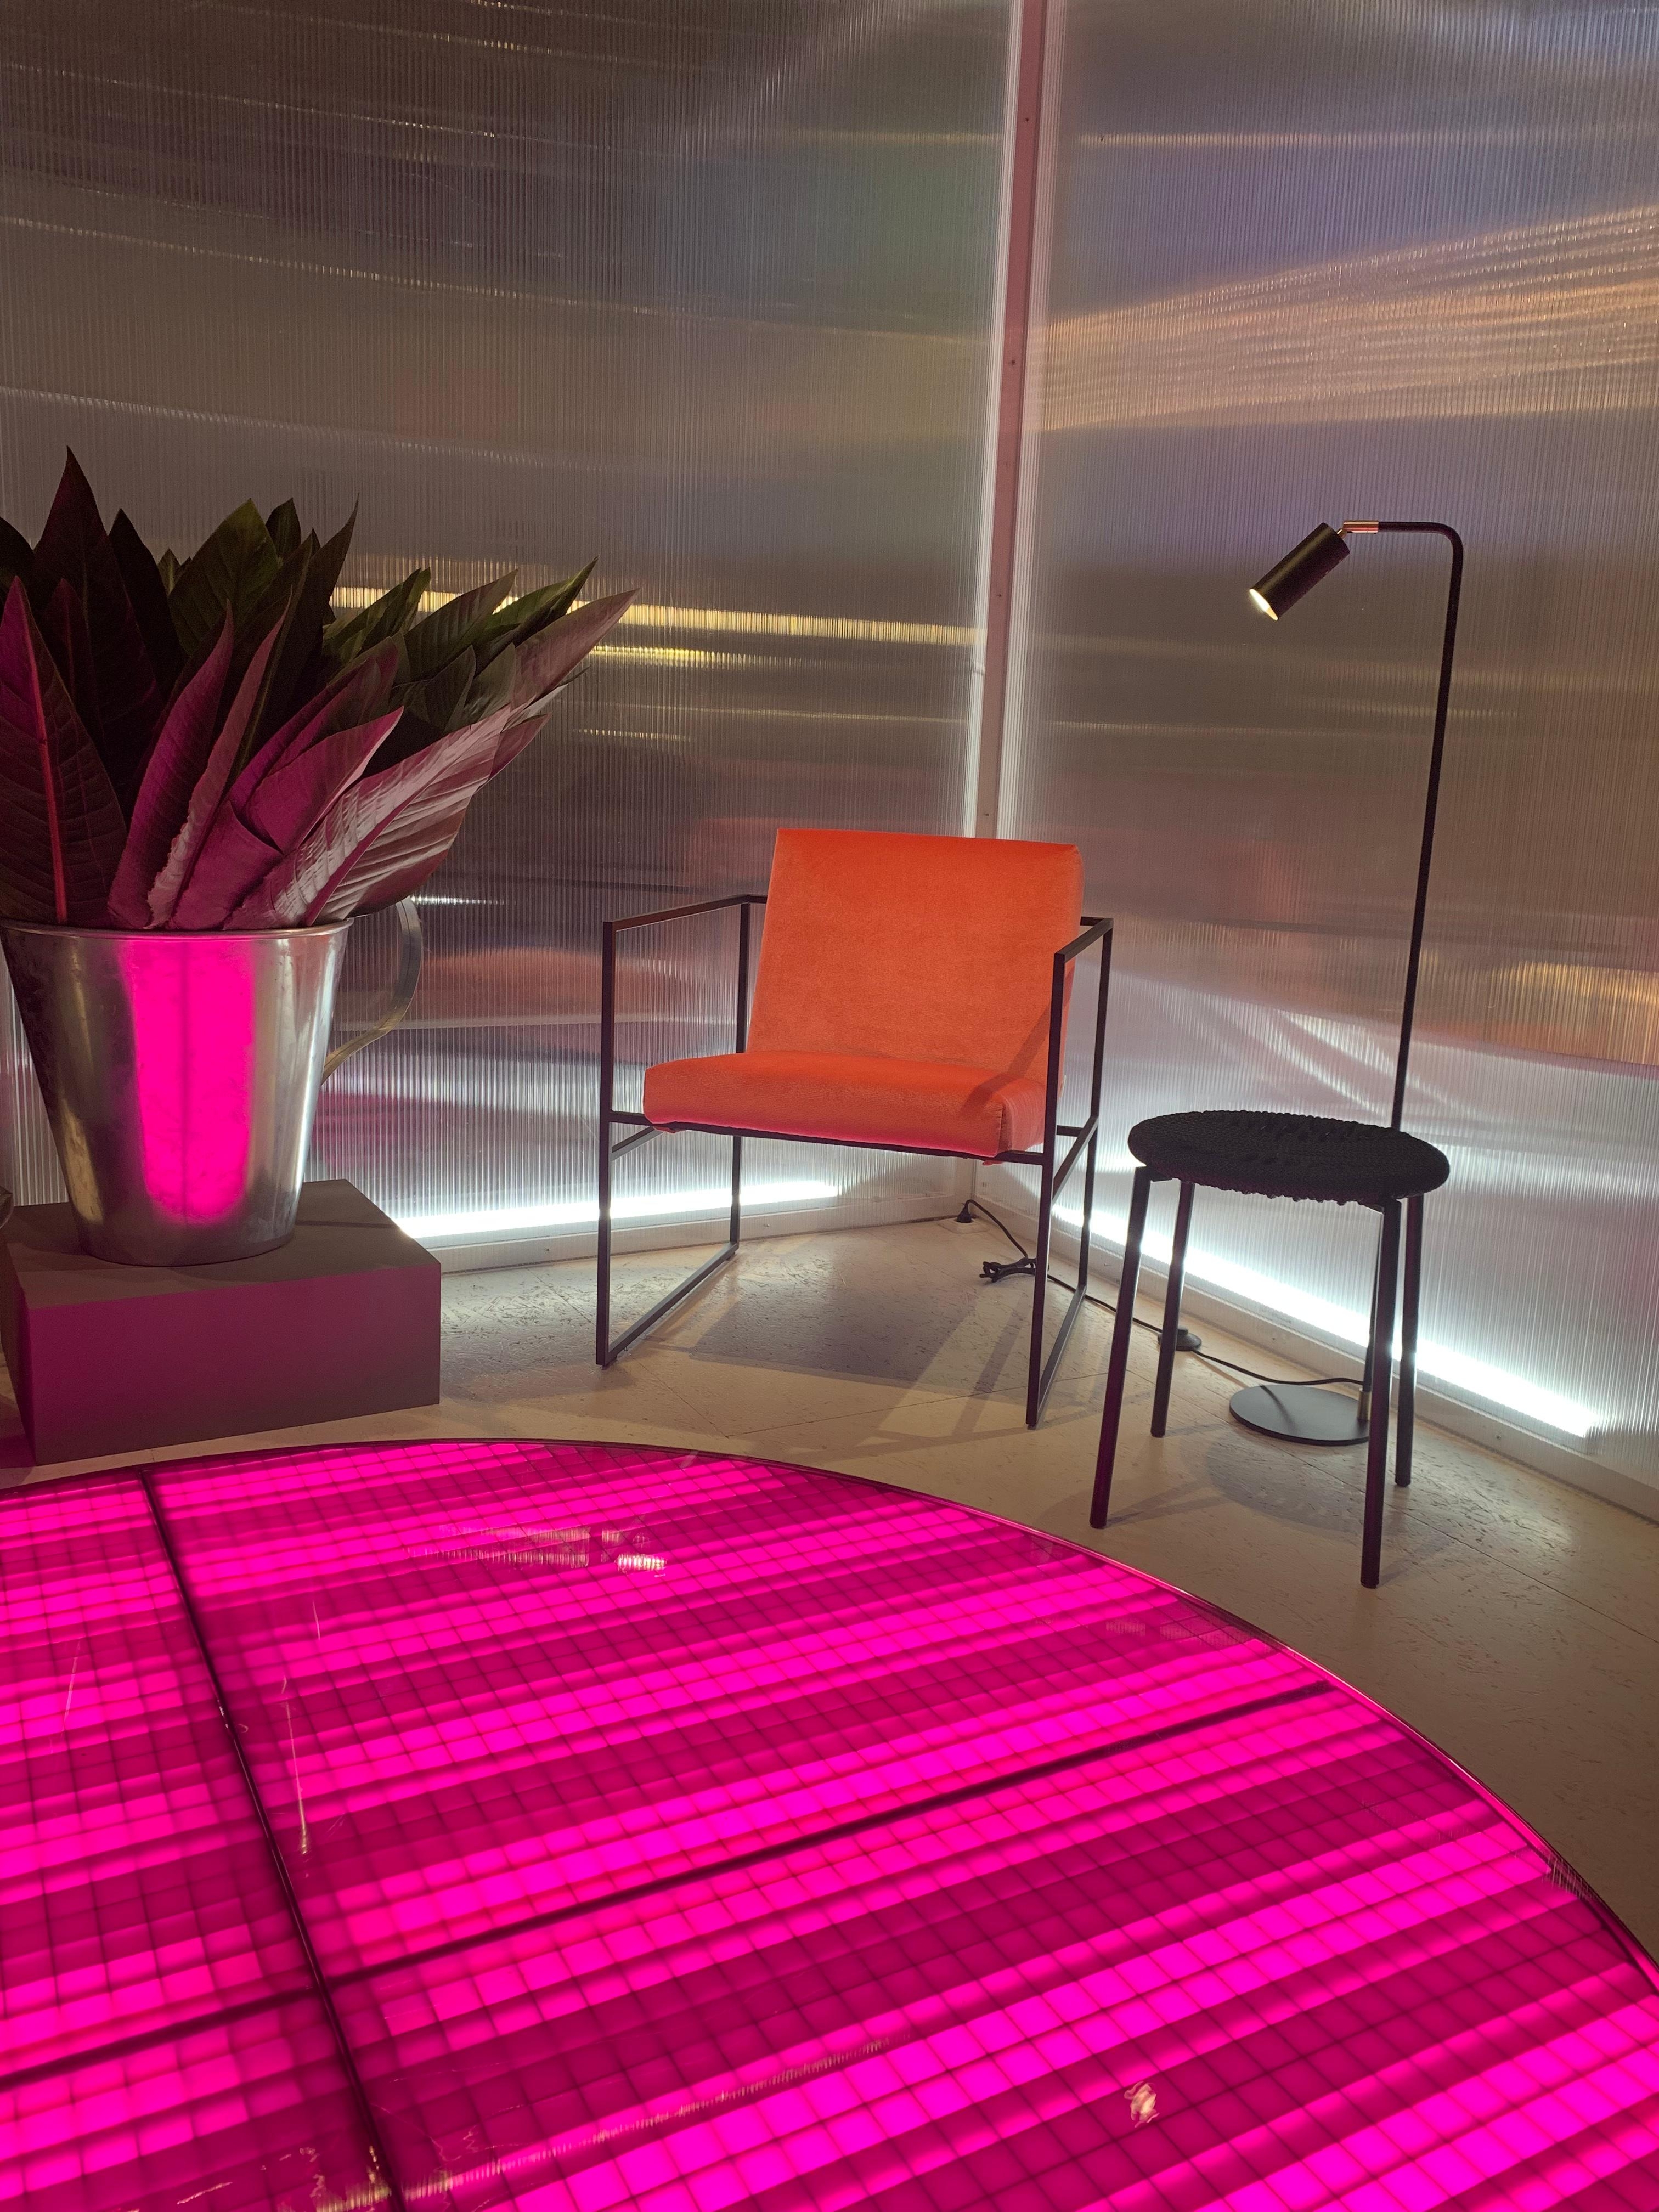 #brühl inszenierte die Möbel besonders cool - #colorblocking mit #orange und #pink! #imm2019 #imm